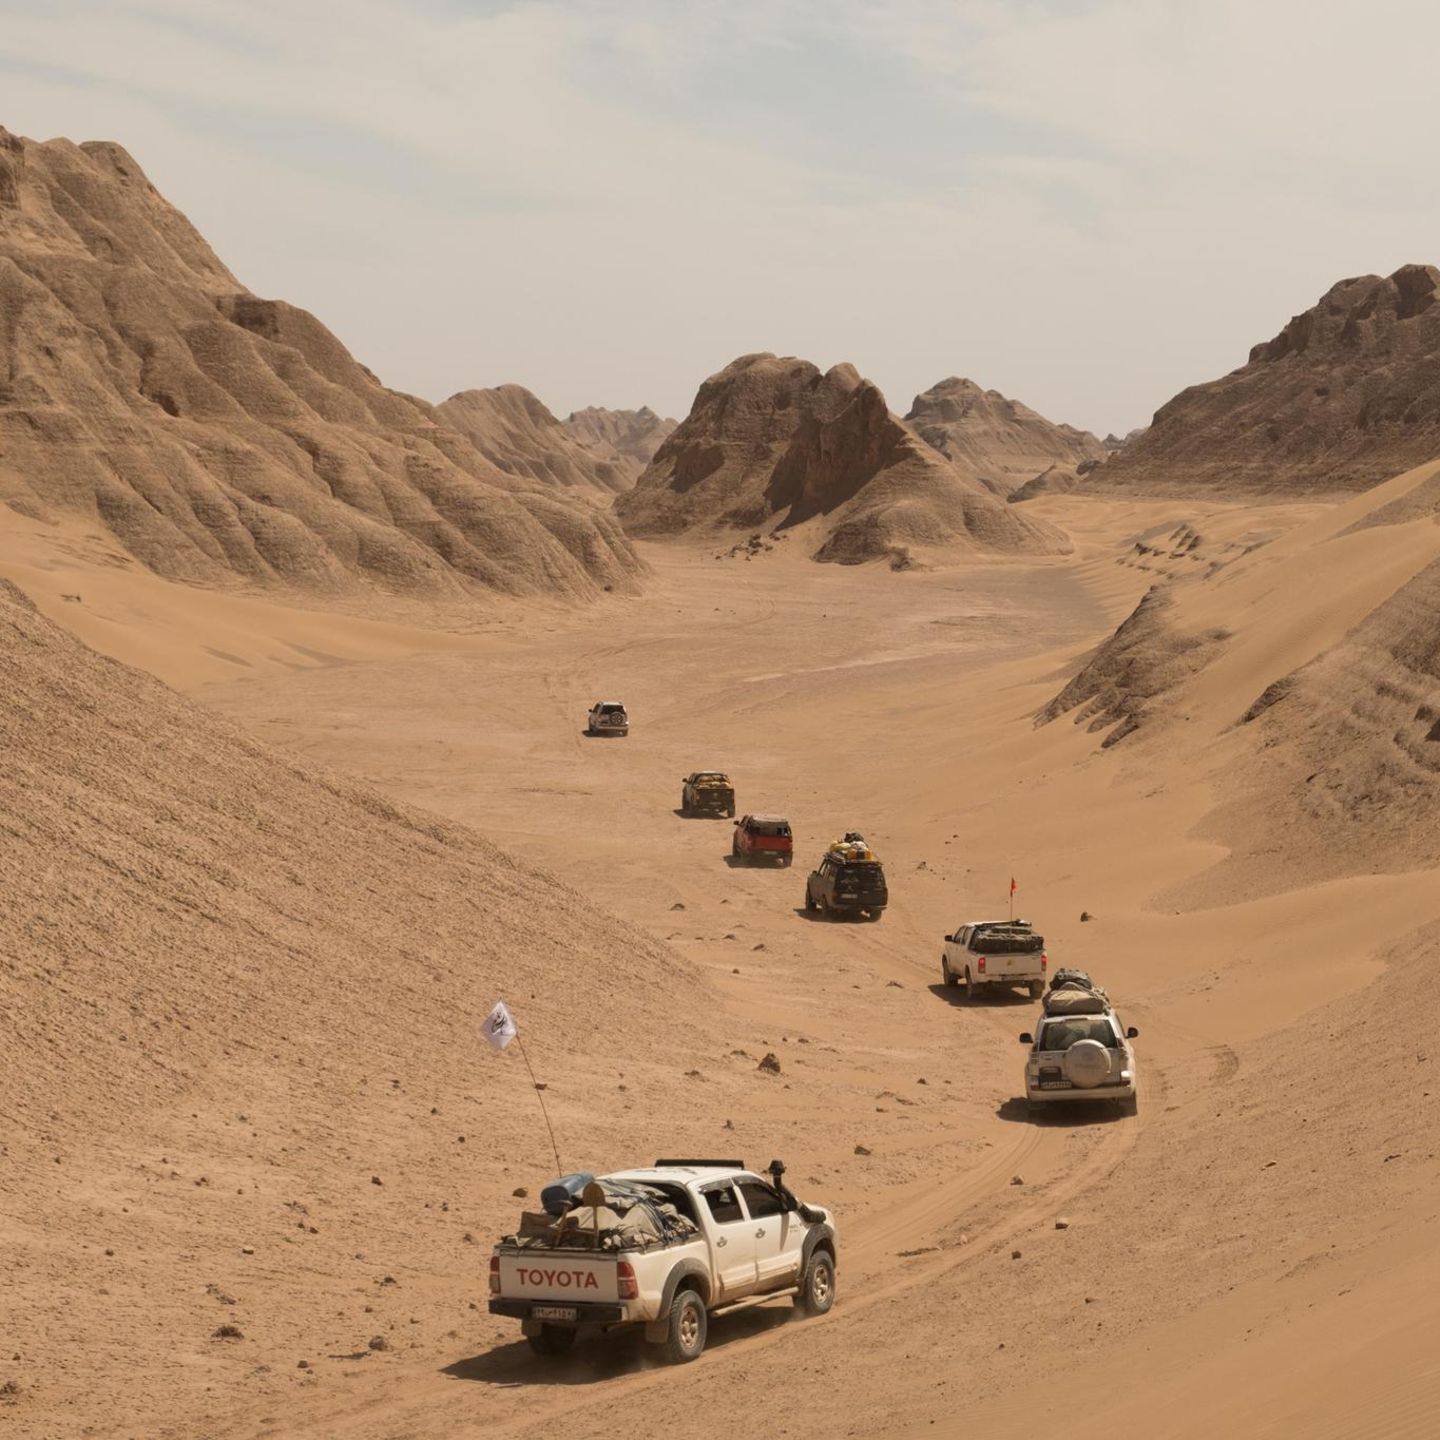 Expedition: Vorstoß in die Wüste Lut – an den heißesten Ort der Erde